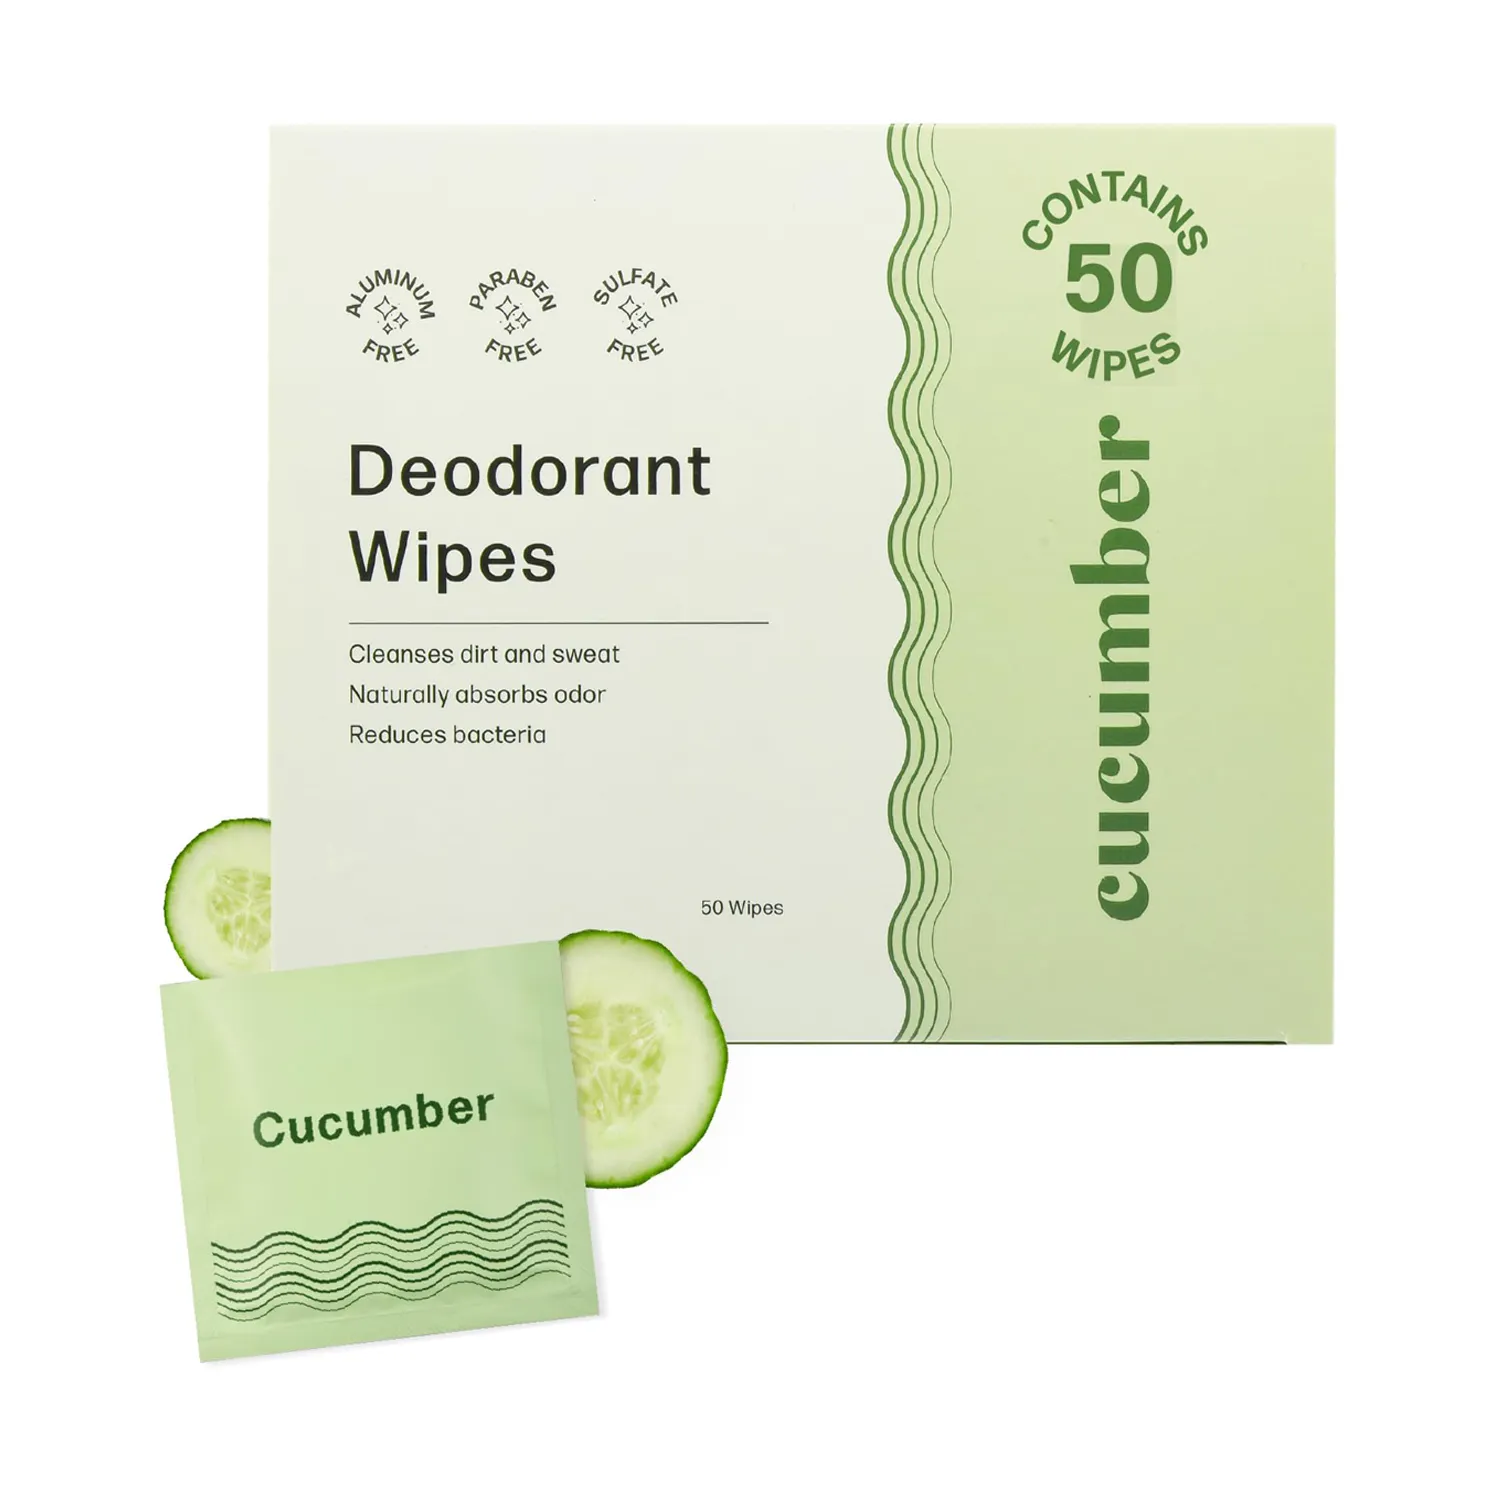 Tisu organik anti perspiran tubuh kustom tisu deodoran tunggal yang dapat dibuang untuk orang dewasa dibungkus secara individu untuk penggunaan rumah tangga